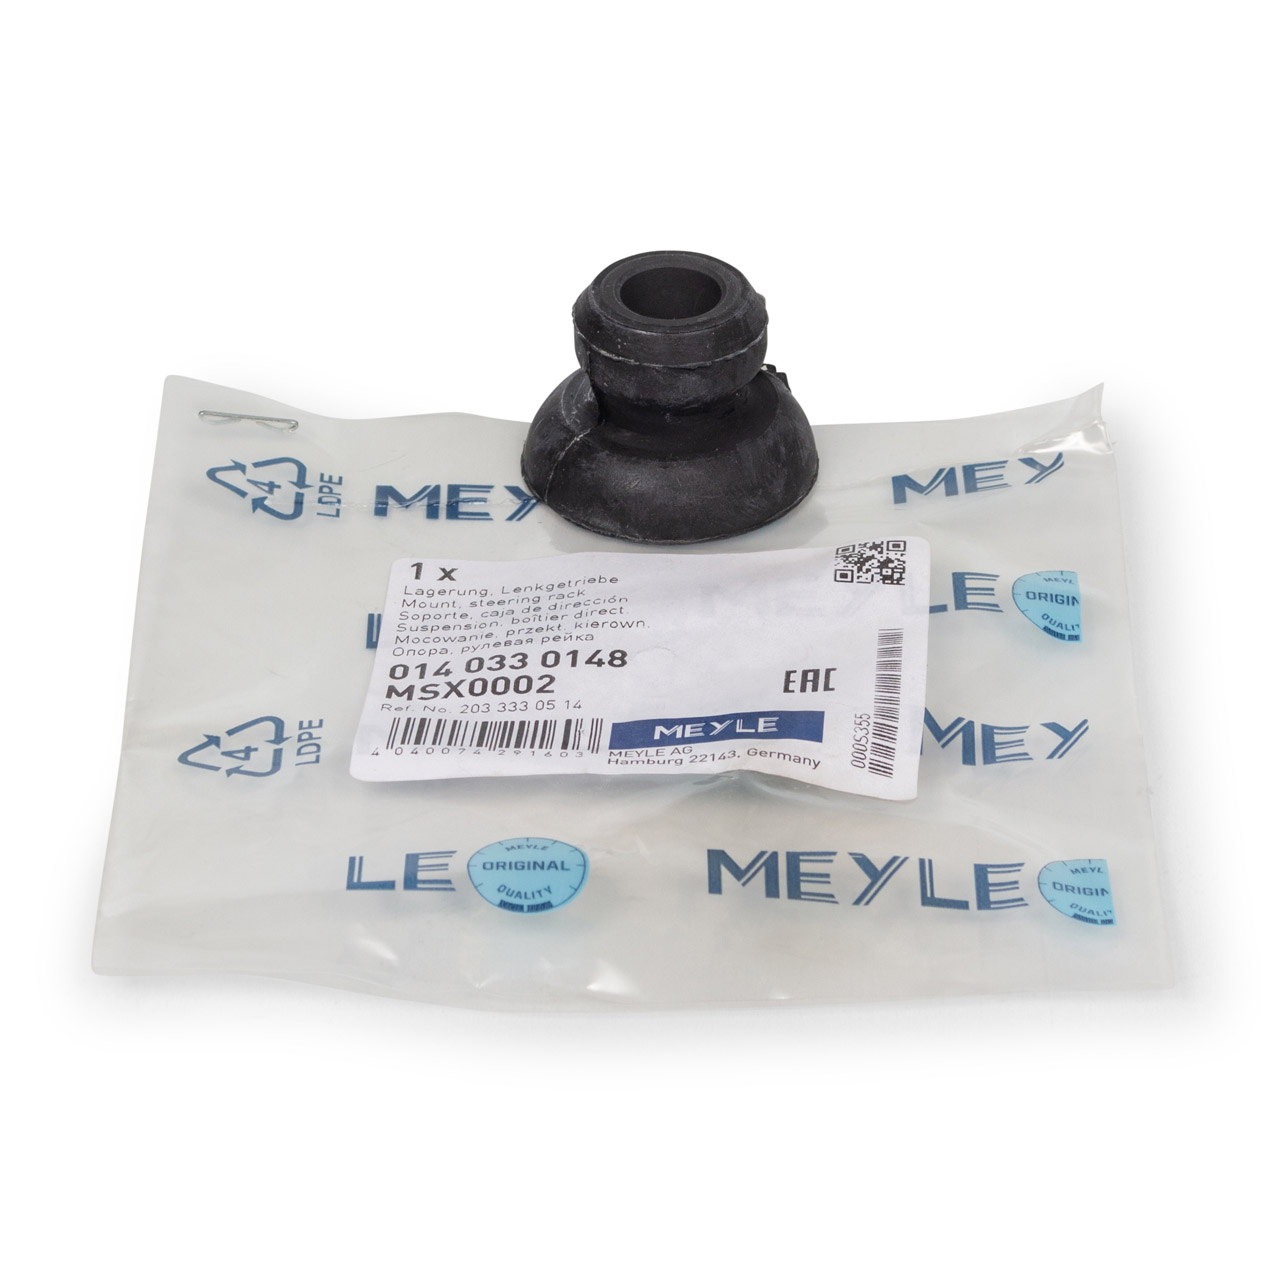 MEYLE 0140330148 Lagerung Lenkgetriebe MERCEDES W203 CL203 C209 R171 vorne 2033330514